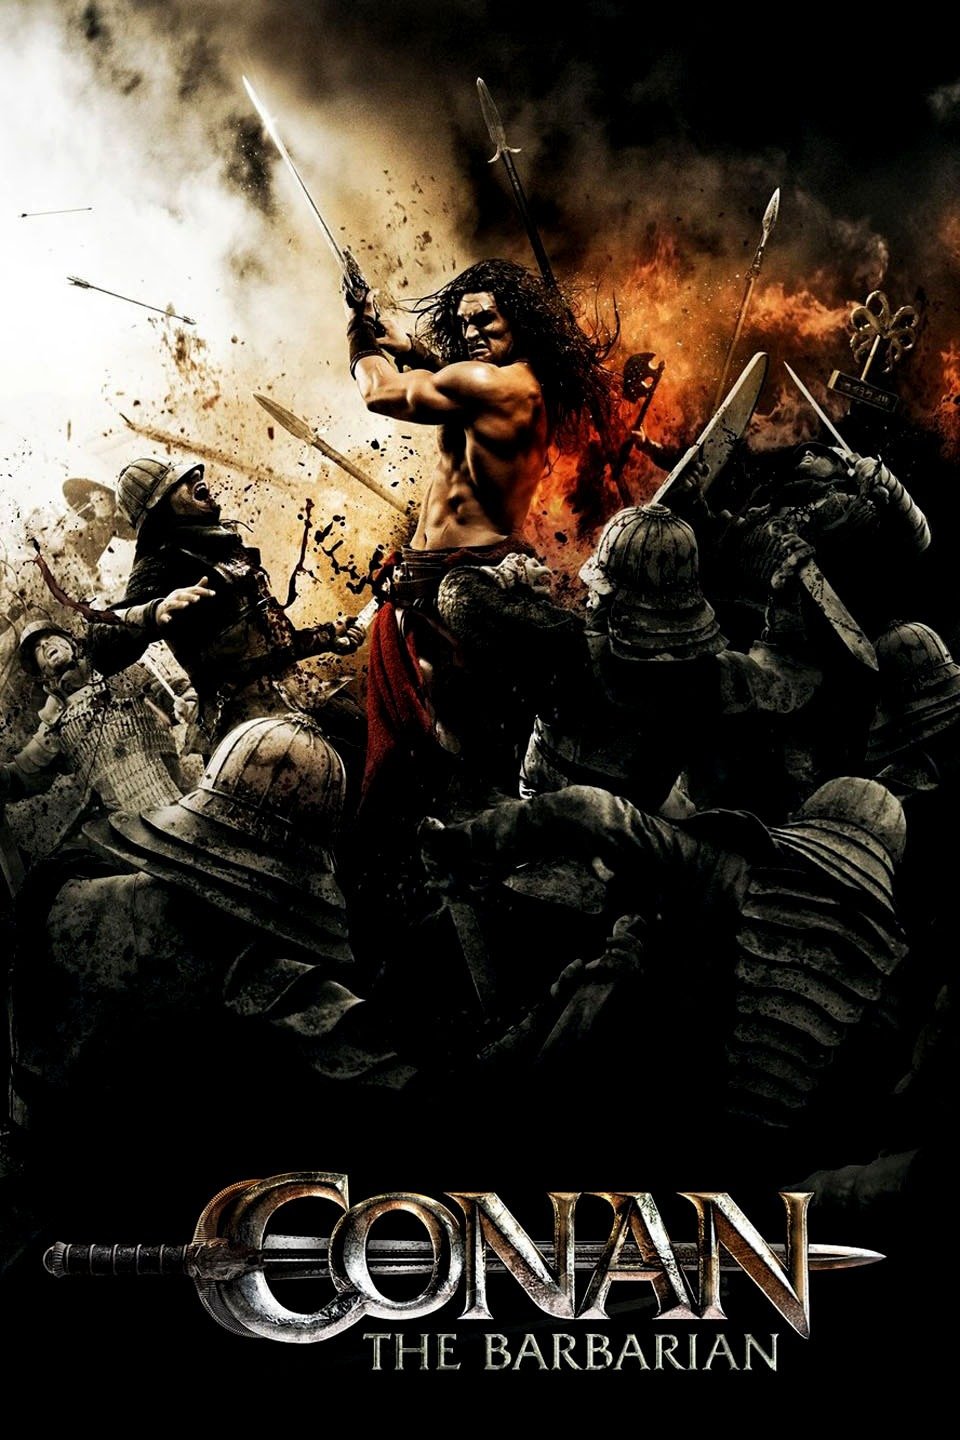 [MINI Super-HQ] Conan The Barbarian (2011) โคแนน นักรบเถื่อน [1080p] [พากย์ไทย 5.1 + เสียงอังกฤษ DTS] [บรรยายไทย + อังกฤษ] [เสียงไทย + ซับไทย] [OPENLOAD]